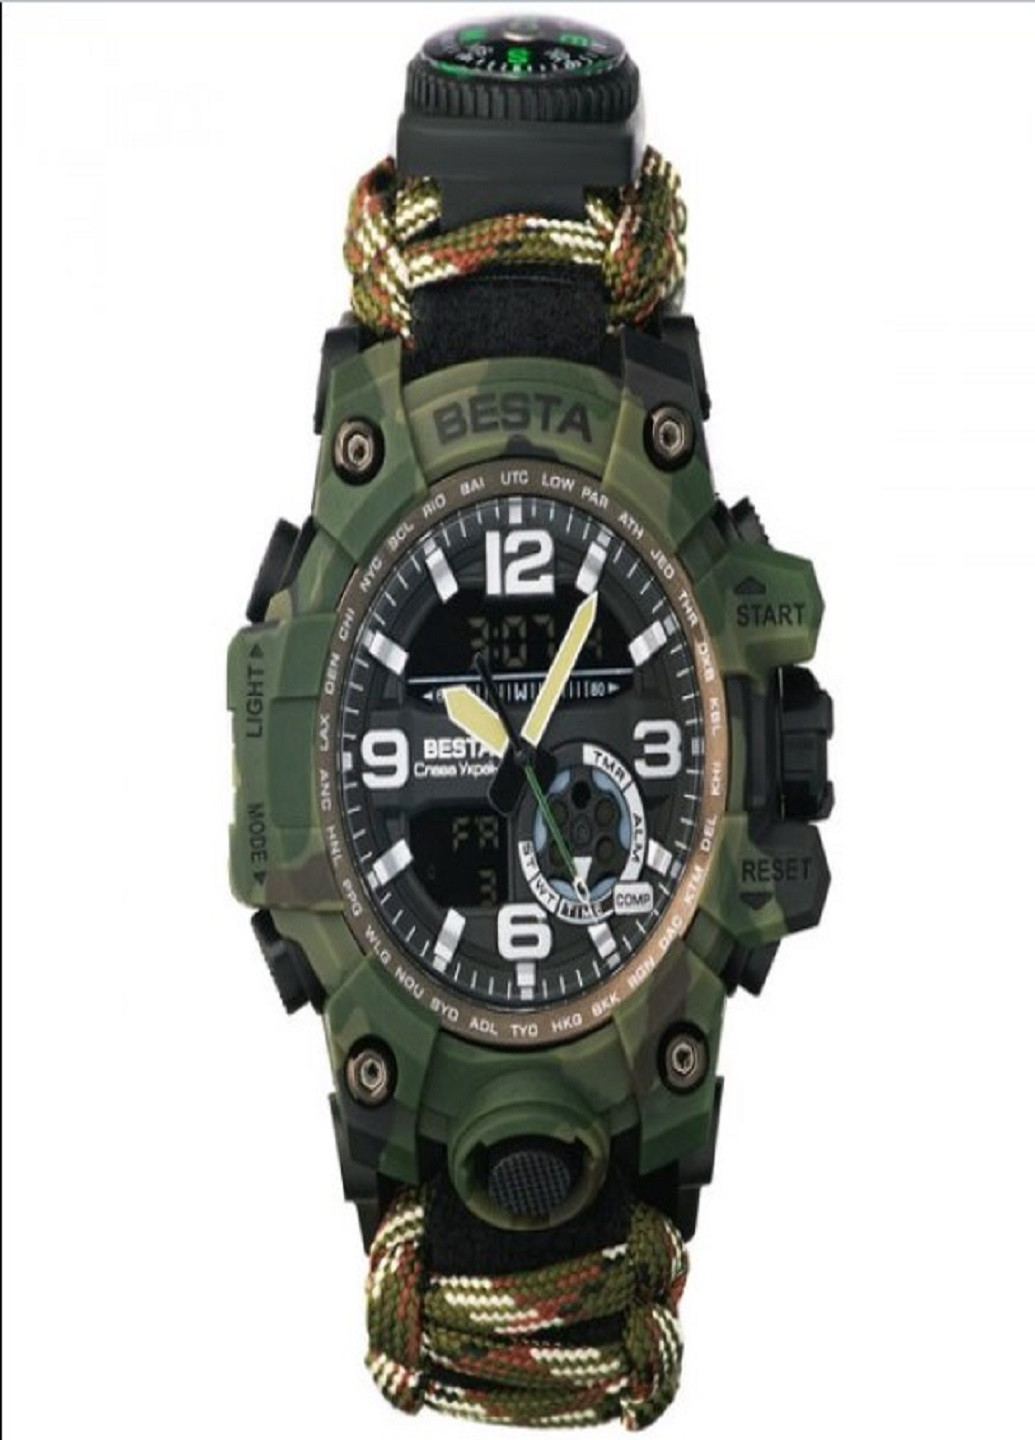 Мужские наручные часы Military с компасом для выживания 7 в 1 милитари Besta (258721952)